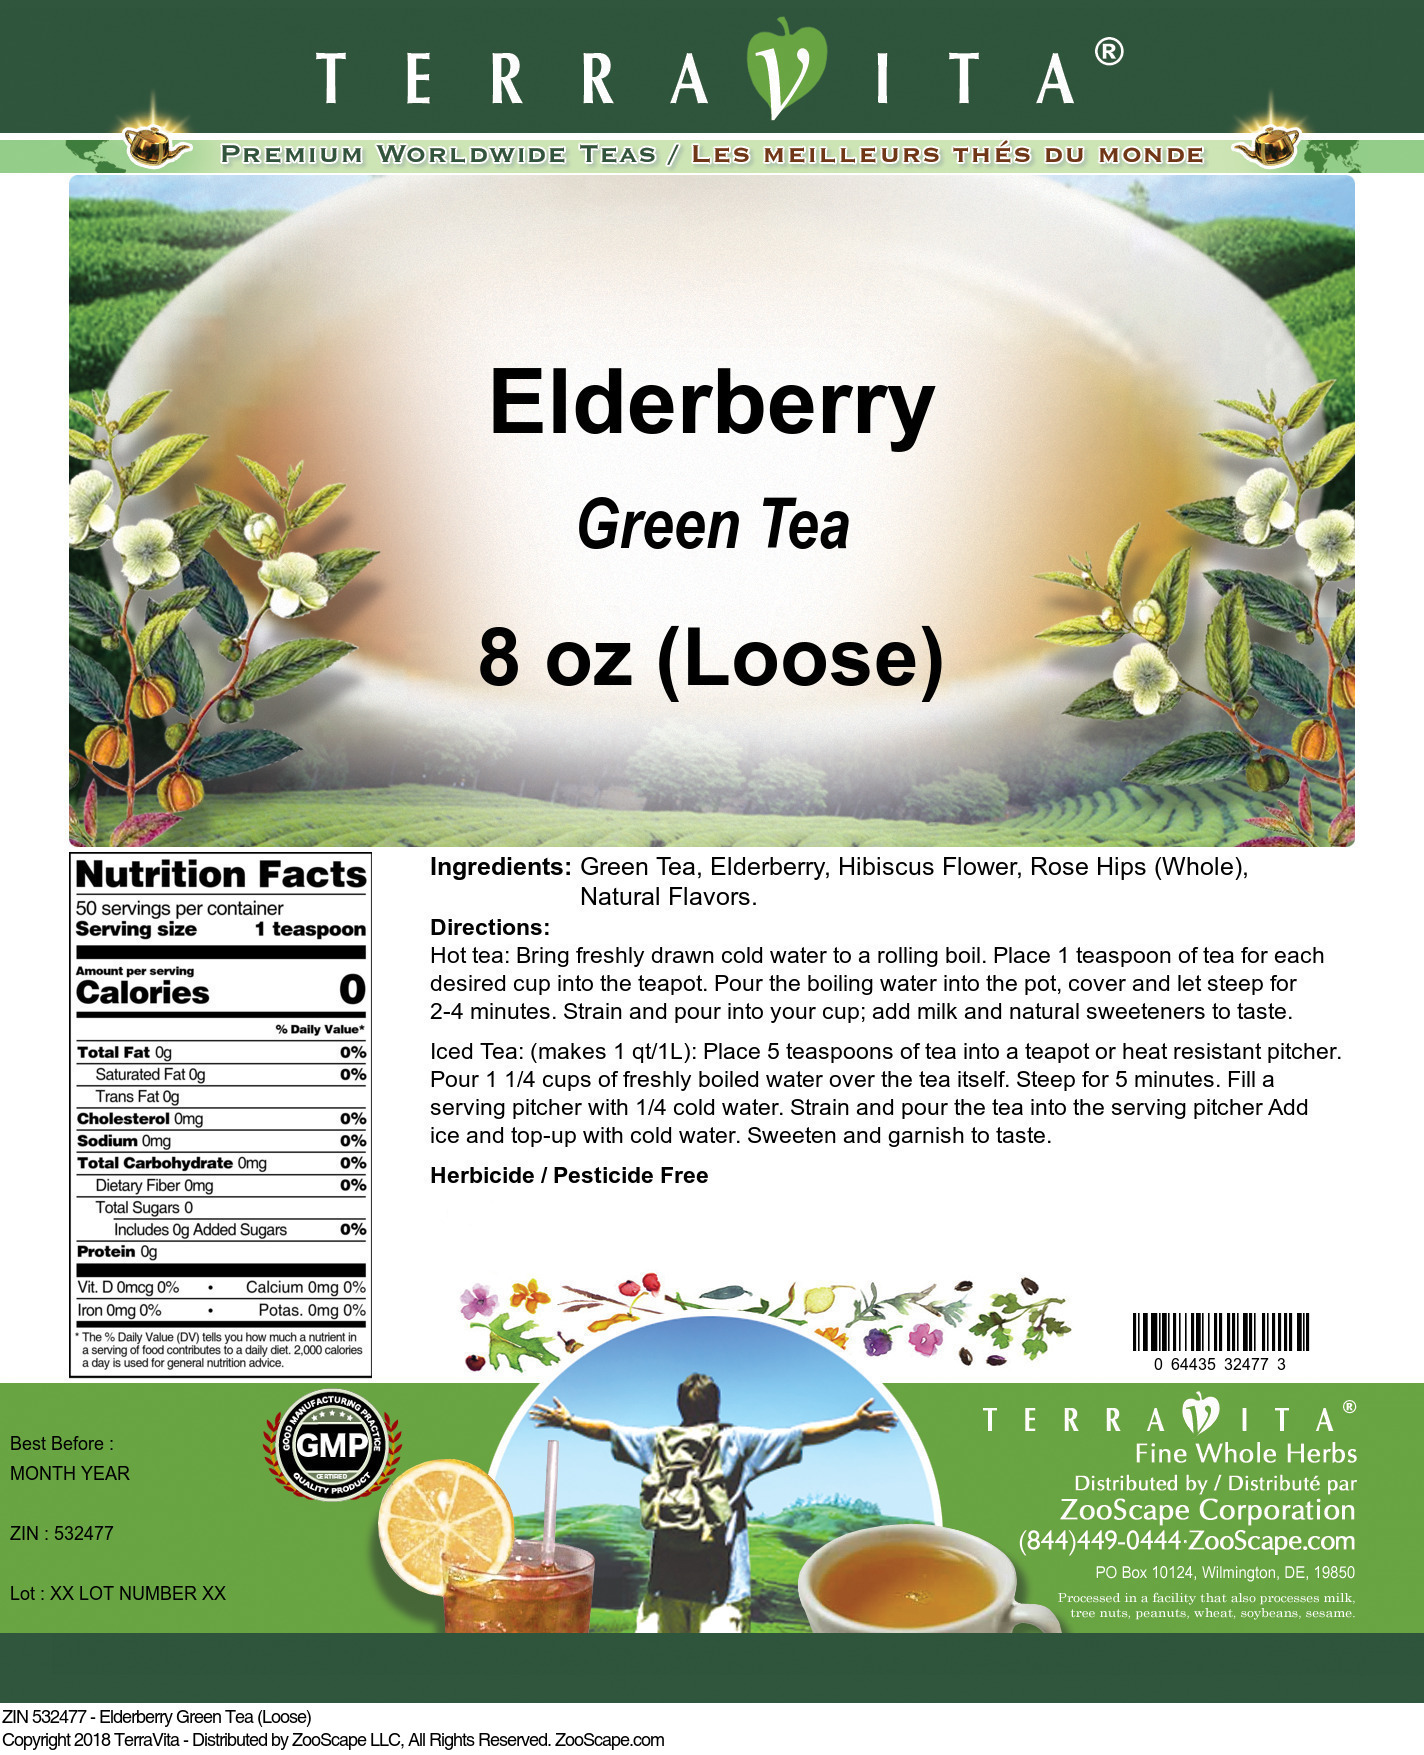 Elderberry Green Tea (Loose) - Label